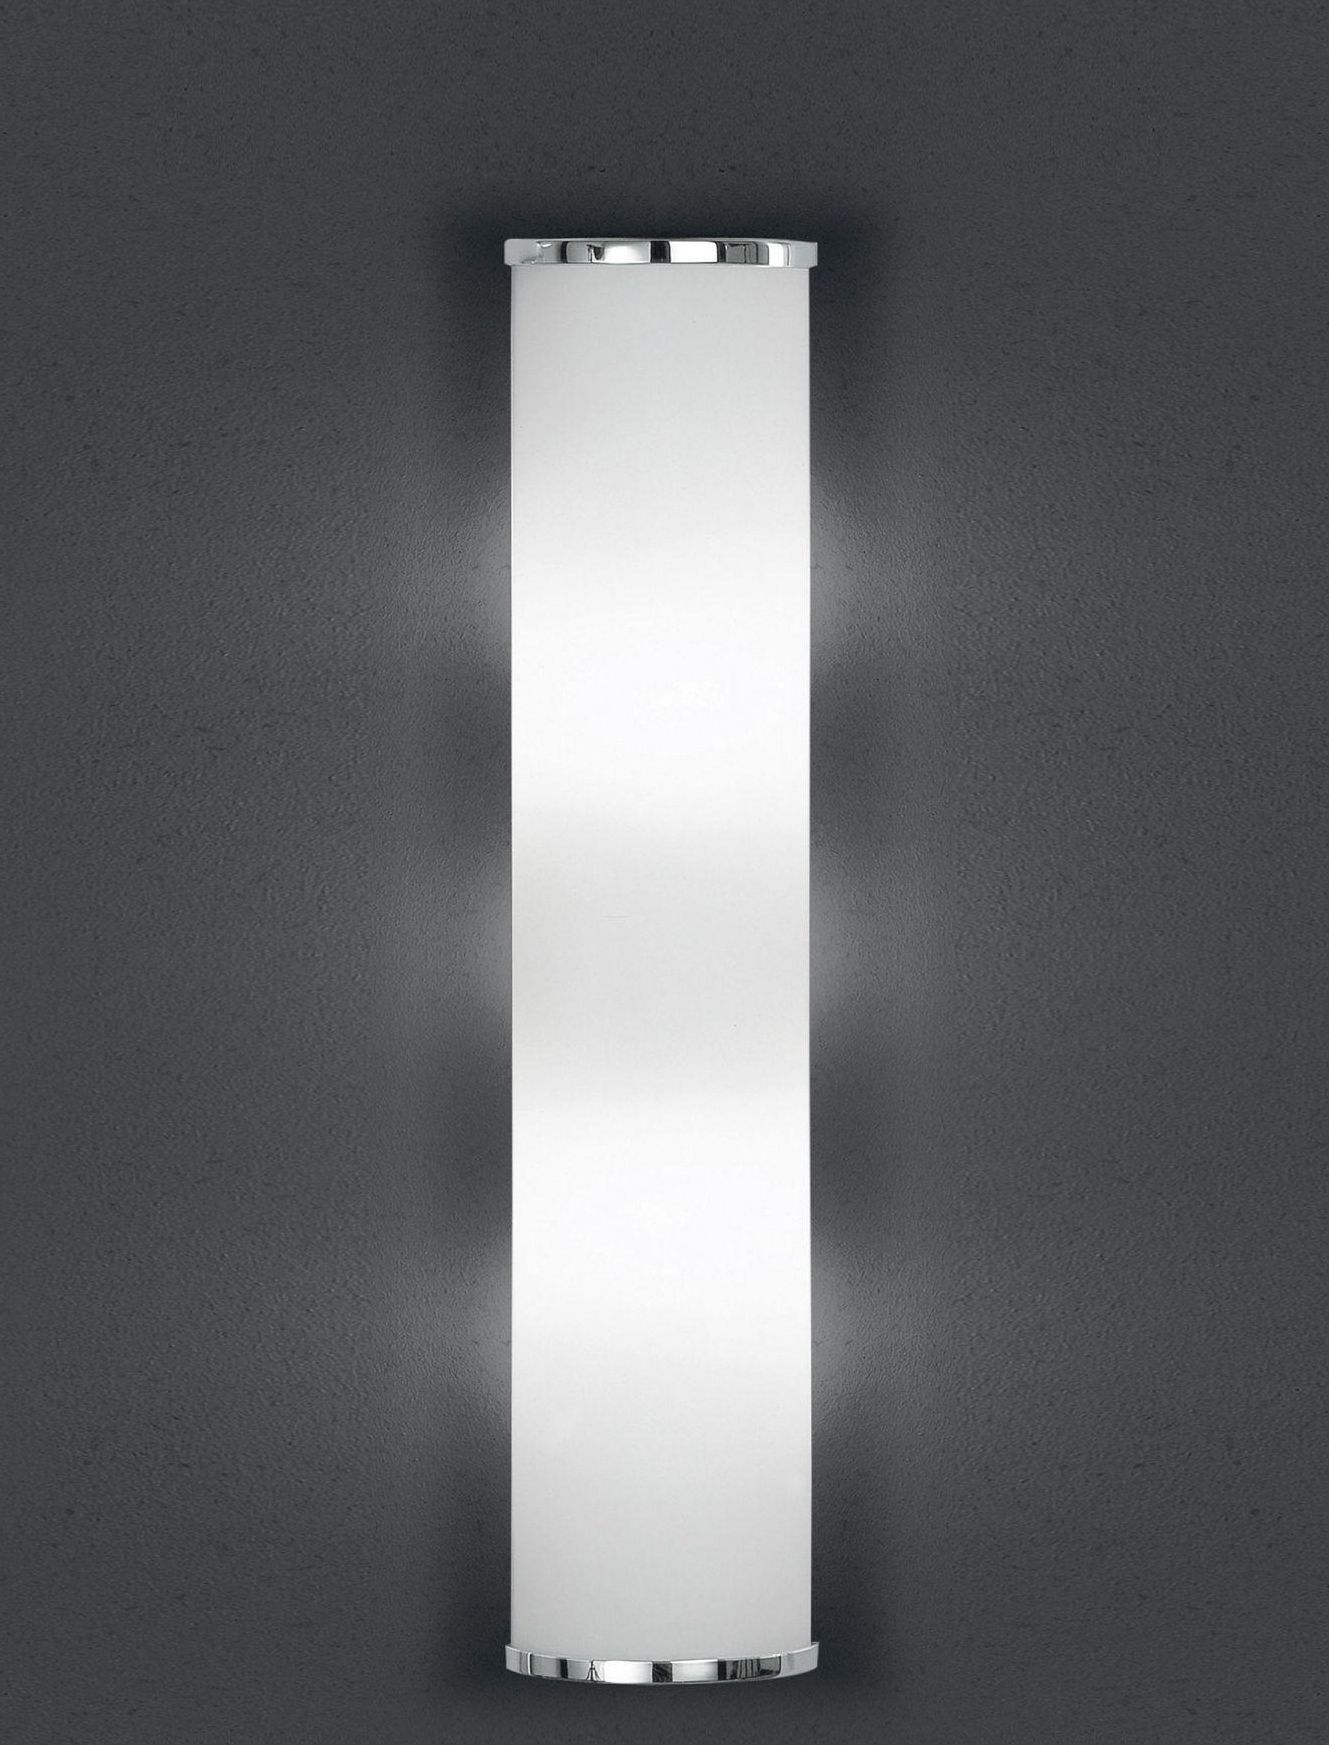 BANKAMP Leuchtenmanufaktur Klassische Wandleuchten & Wandlampen fürs Esszimmer von BANKAMP Leuchtenmanufaktur LED-Wandleuchte Cromo 4295/530-02